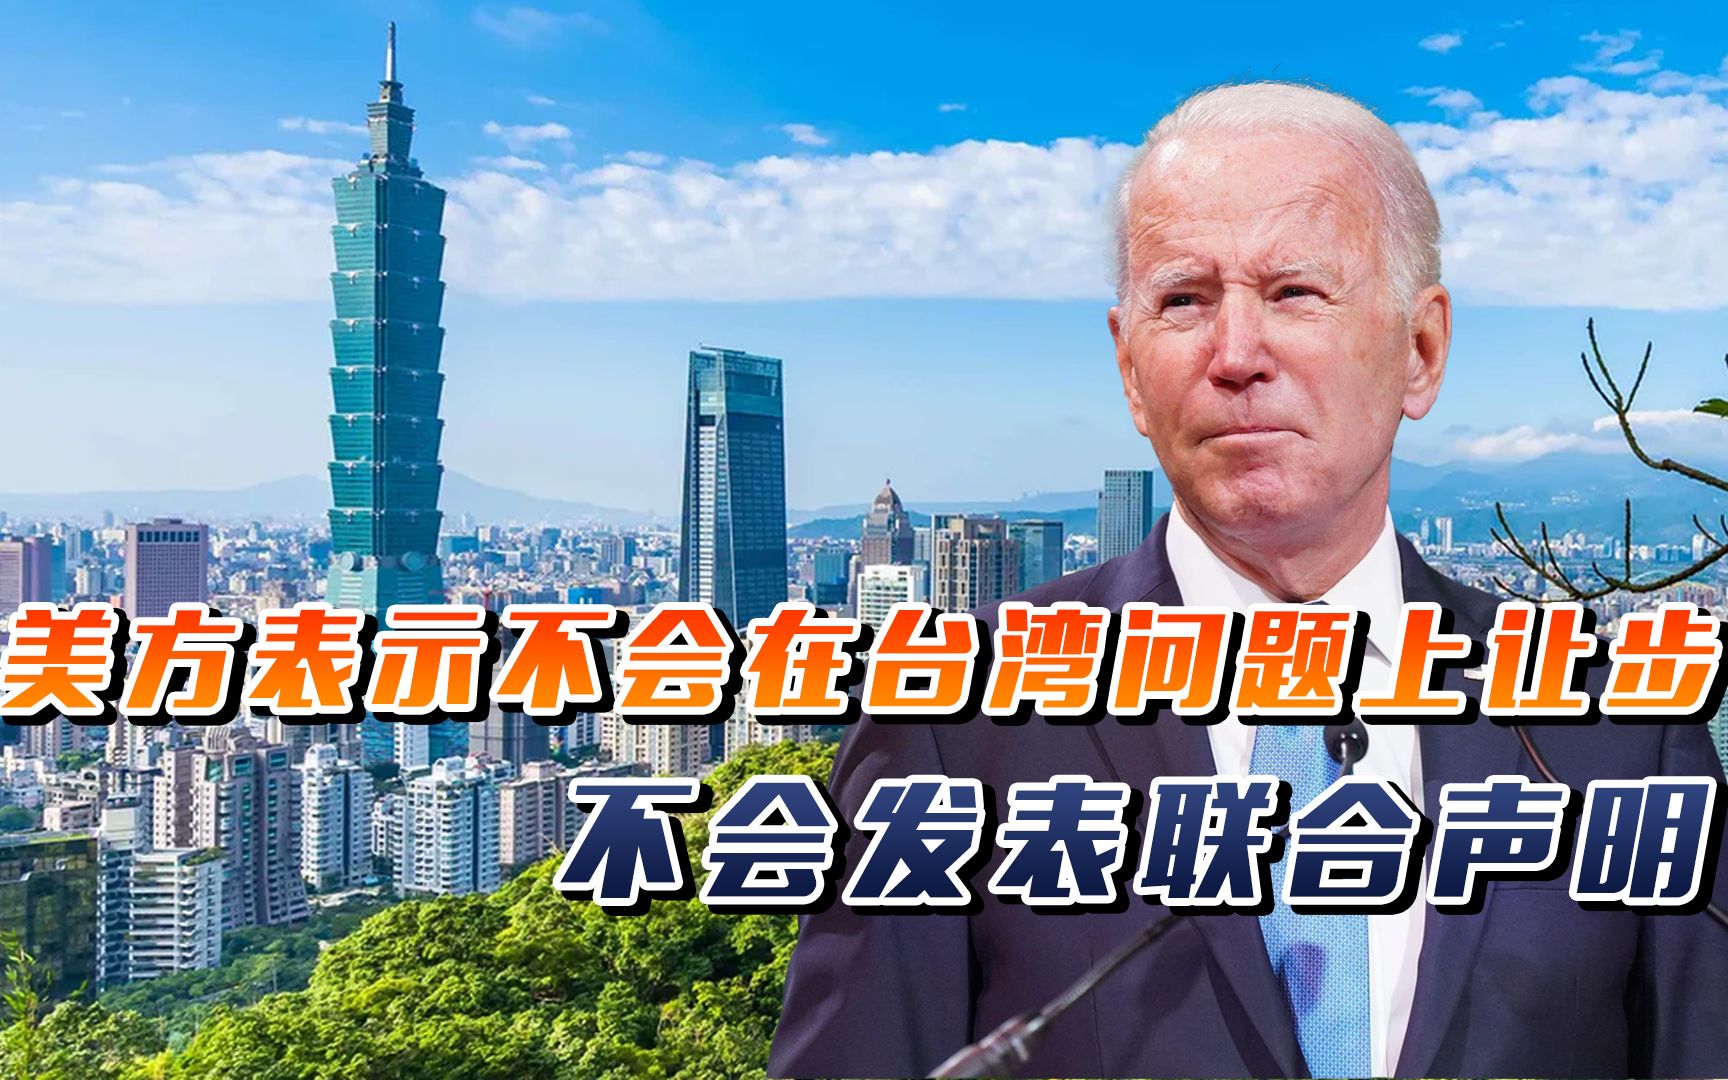 中美峰会在即,美方表示不会在台湾问题上让步,不会发表联合声明